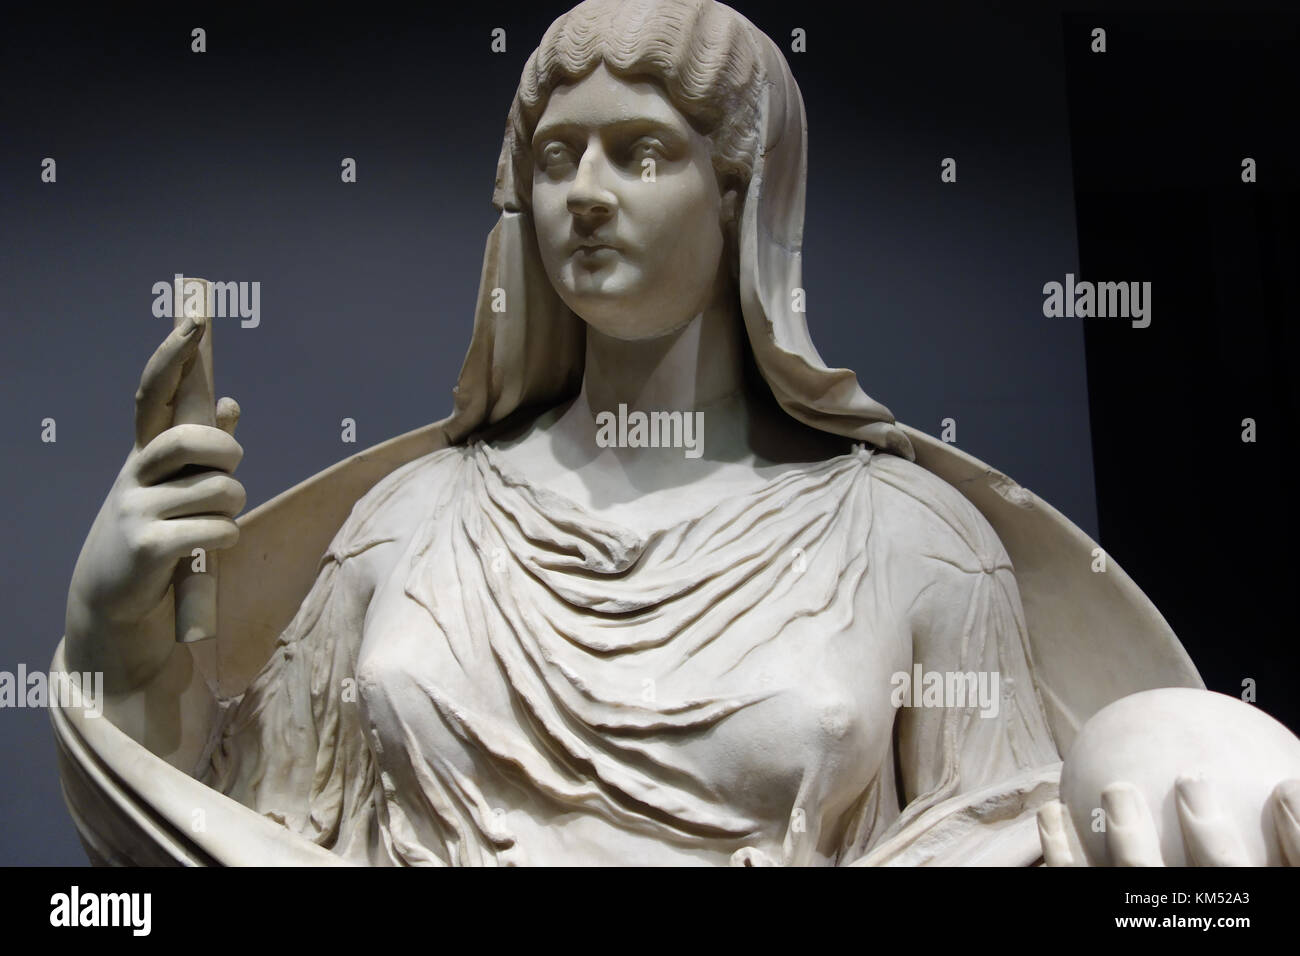 ROM, ITALIEN - 5. NOVEMBER 2017: Alte römische Marmorstatue einer idealisierten Frau, ausgestellt im Palazzo Massimo alle Terme, Nationales Römisches Museum Stockfoto